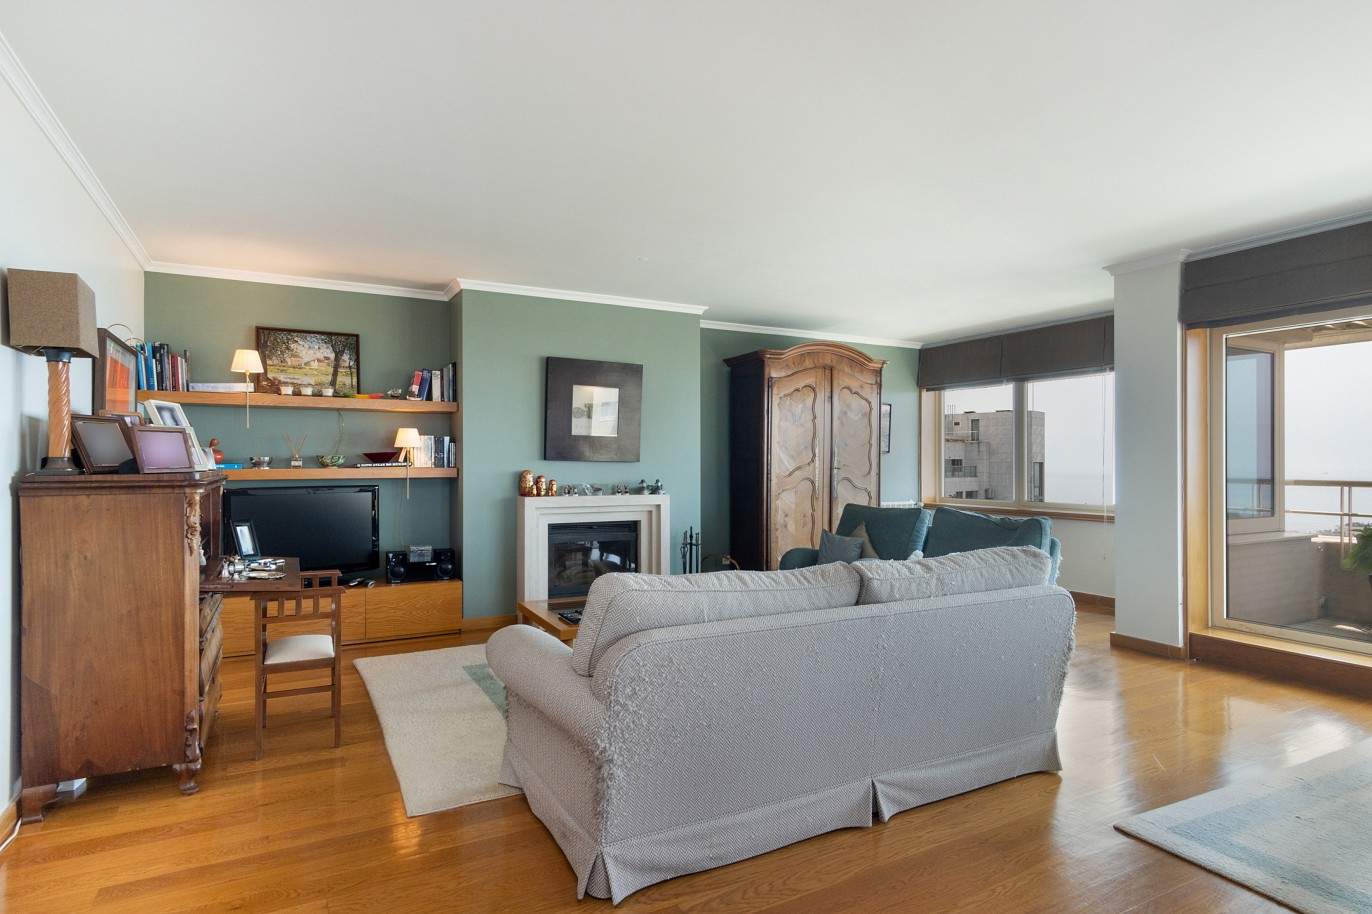 5 bedroom duplex flat with sea views, for sale, Pinhais da Foz, Porto, Portugal_203335